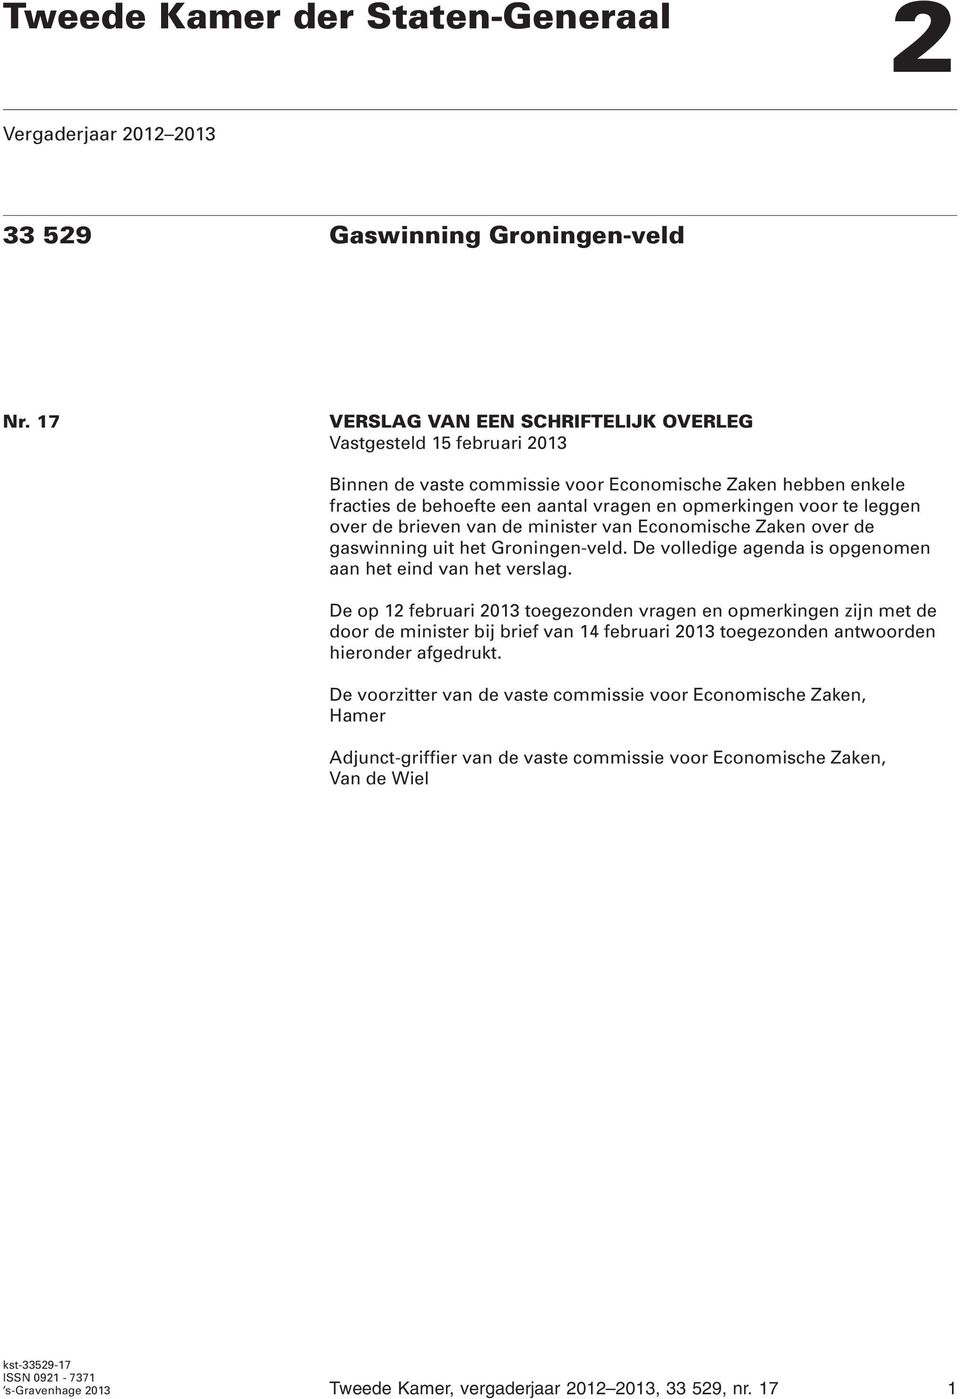 leggen over de brieven van de minister van Economische Zaken over de gaswinning uit het Groningen-veld. De volledige agenda is opgenomen aan het eind van het verslag.